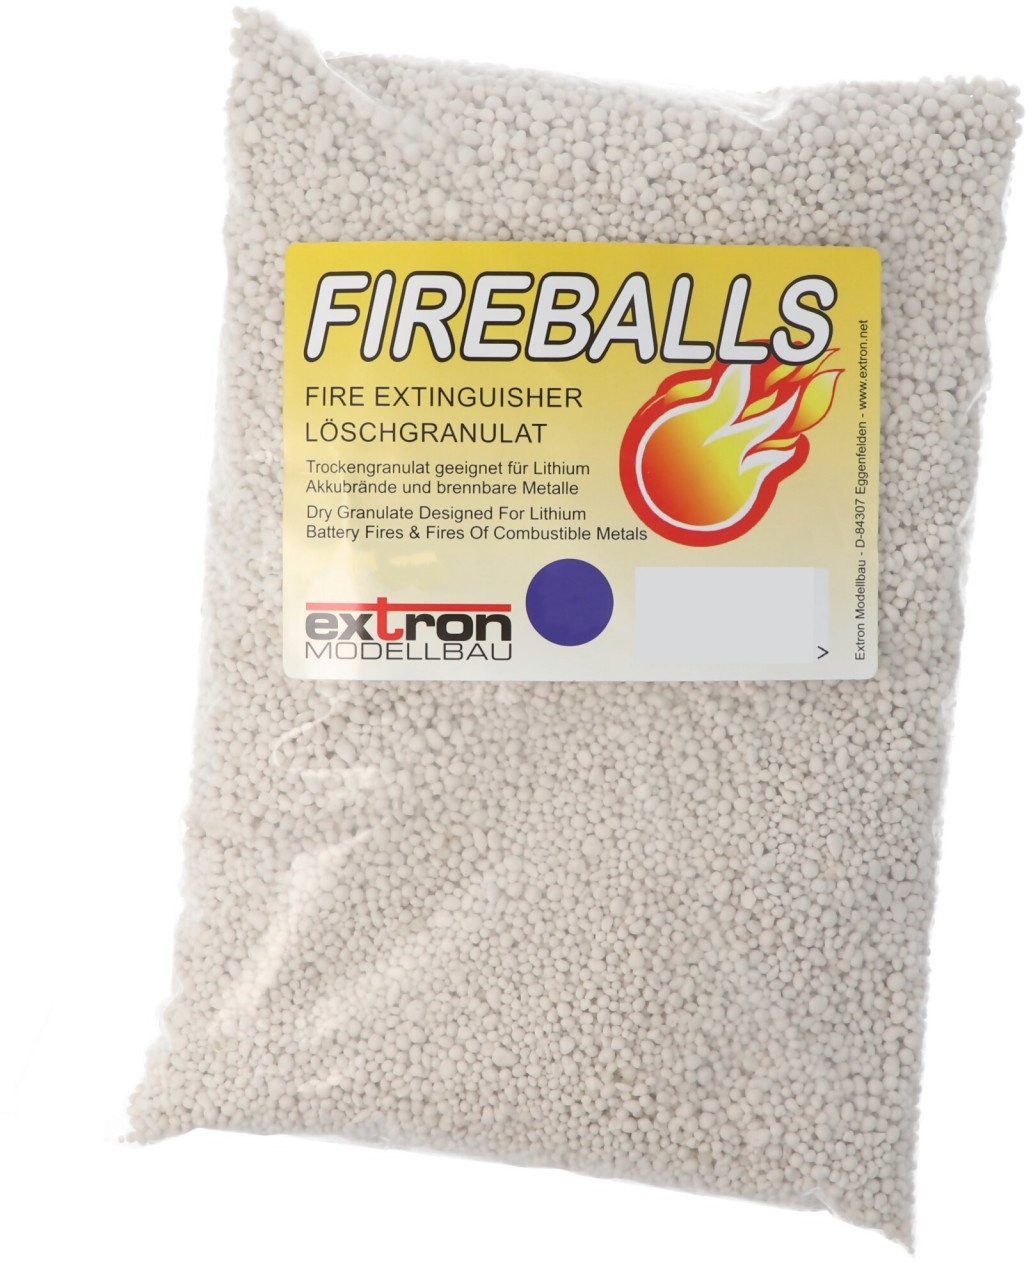 Fireballs Feuerlöschgranulat für Lithium Akkus, Brandschutz, Löschmittel 5 Liter